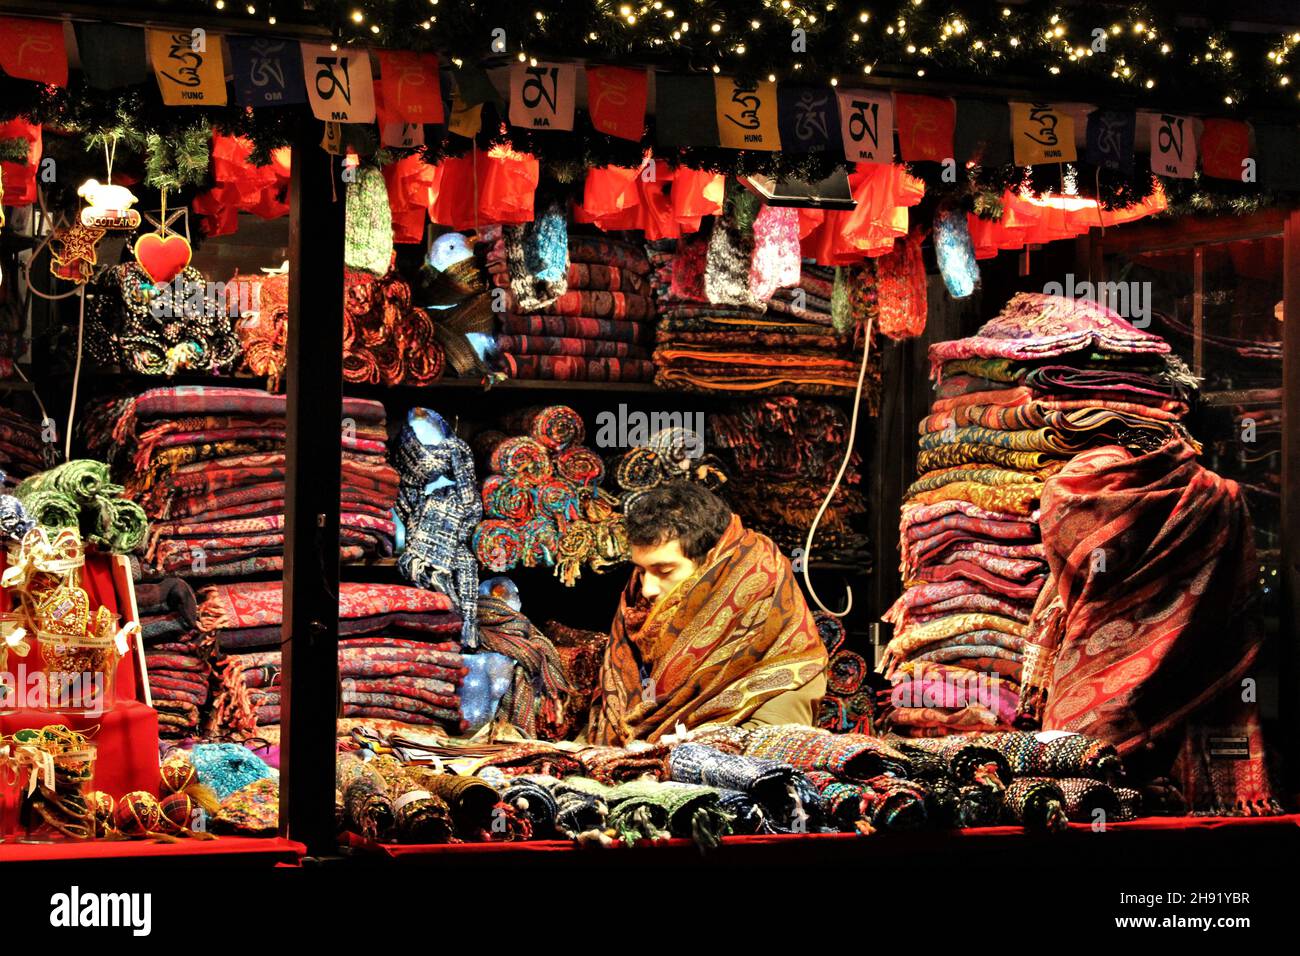 EDIMBURGO, ESCOCIA - 18 DE DICIEMBRE de 2019: El trabajador de la cabina en el mercado de Navidad de Edimburgo se ahora para el calor en algunos de los bufandas que están vendiendo. Foto de stock